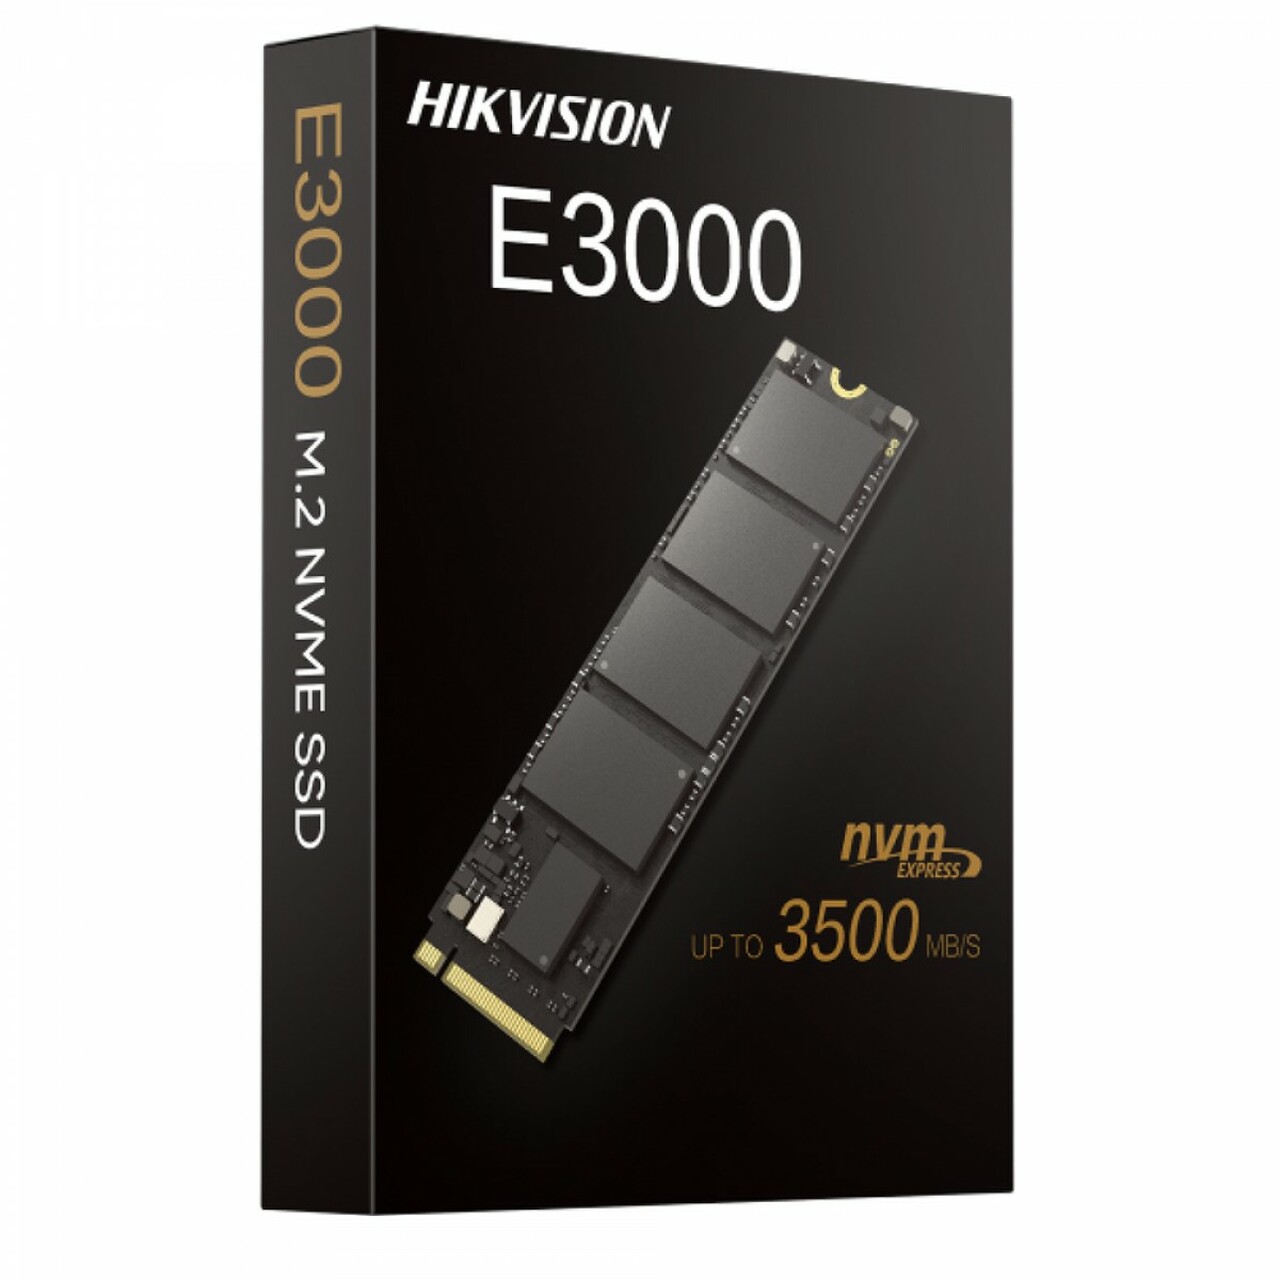 Hikvision%20256GB%20E3000%203230MB-1240MB-s%20NVMe%20HS-SSD-E3000-256G%20Ssd%20Harddisk